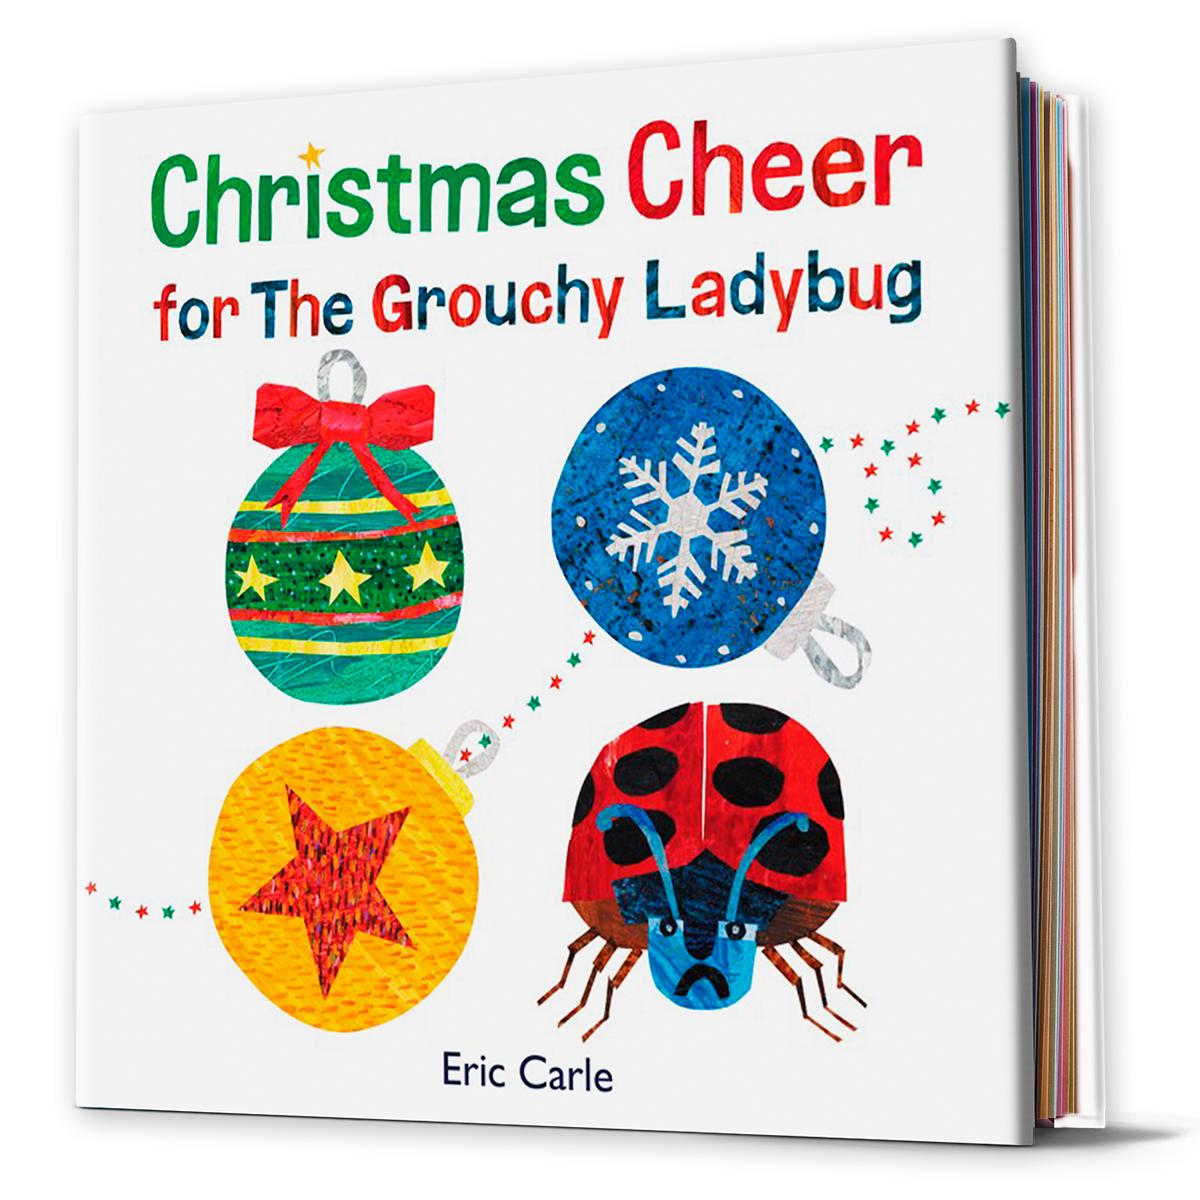  Christmas Cheer for The Grouchy Ladybug 